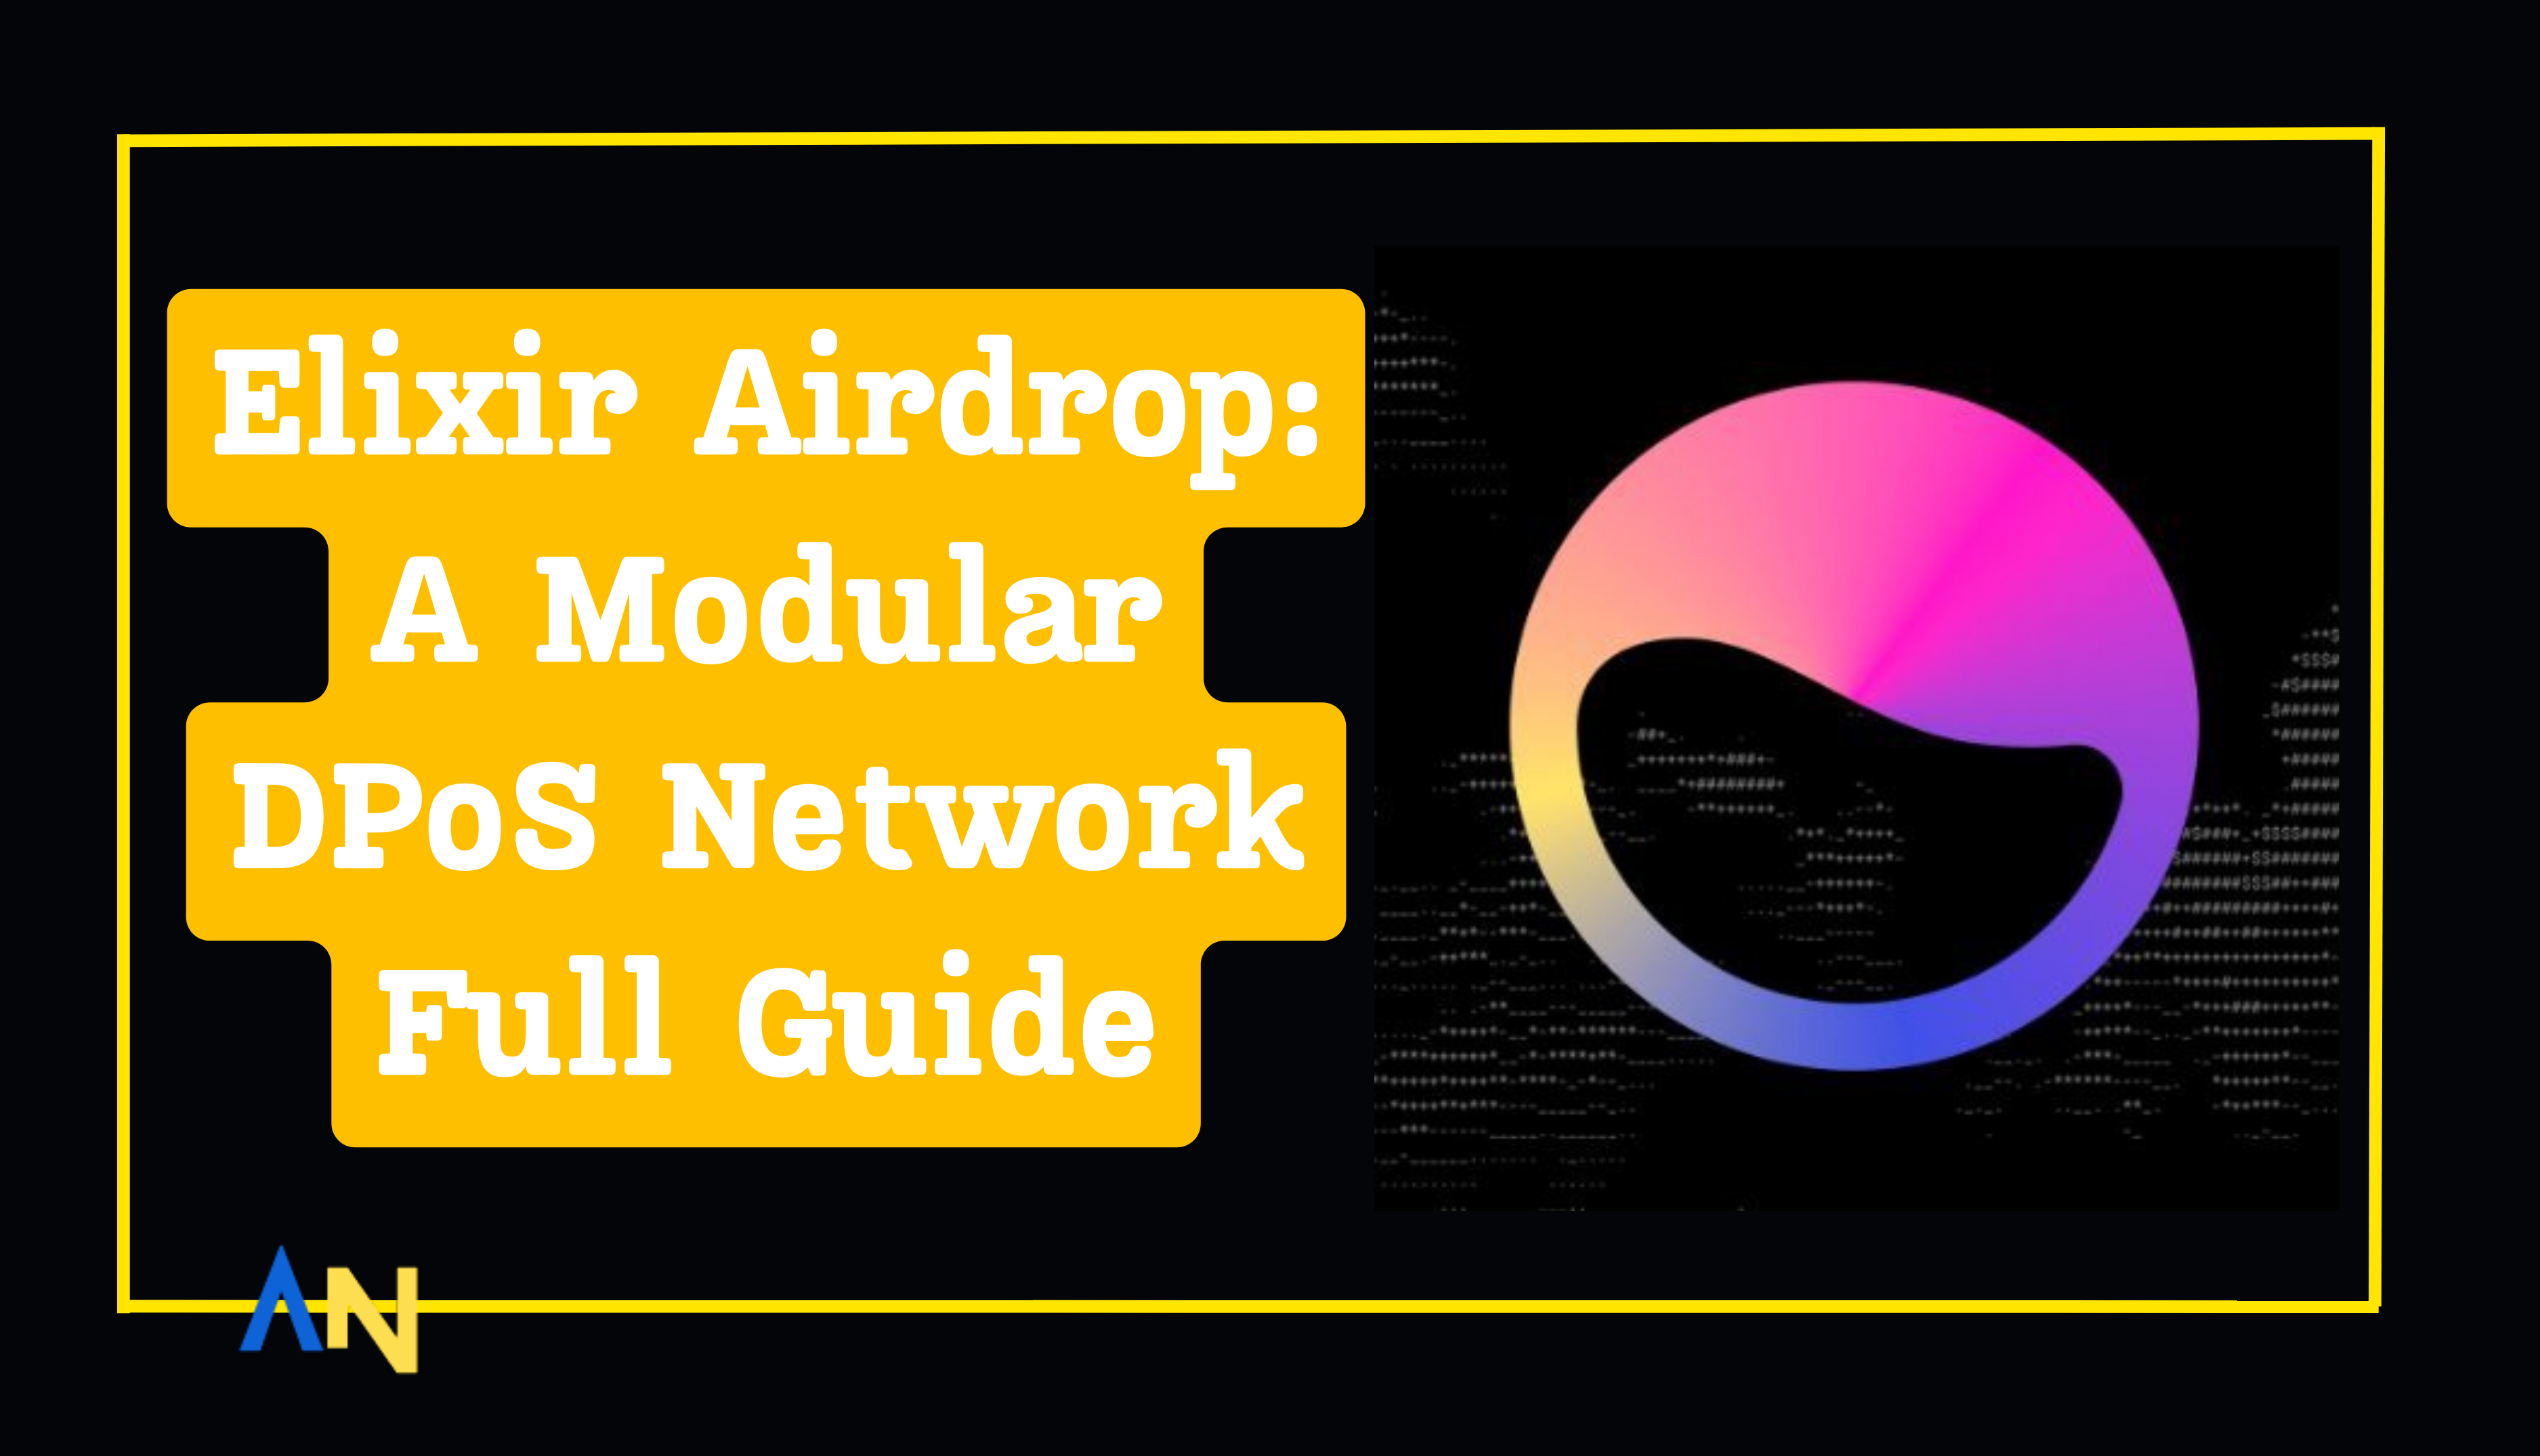 Elixir Airdrop A Modular DPoS Network Full Guide